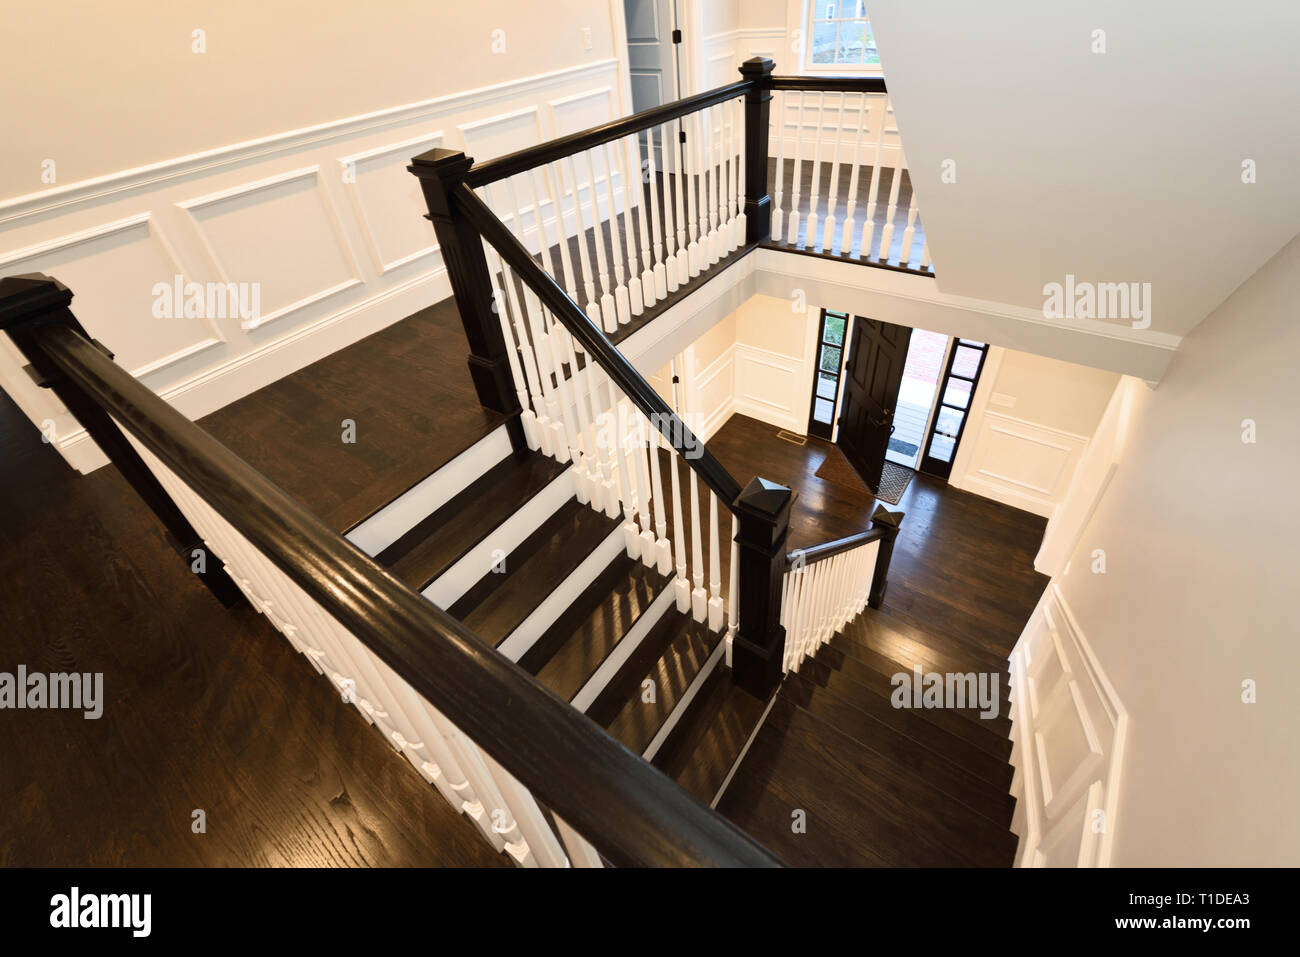 Escalera. Escalera interior de diseño moderno con suelos de madera oscura y revestimientos de paneles blancos Foto de stock